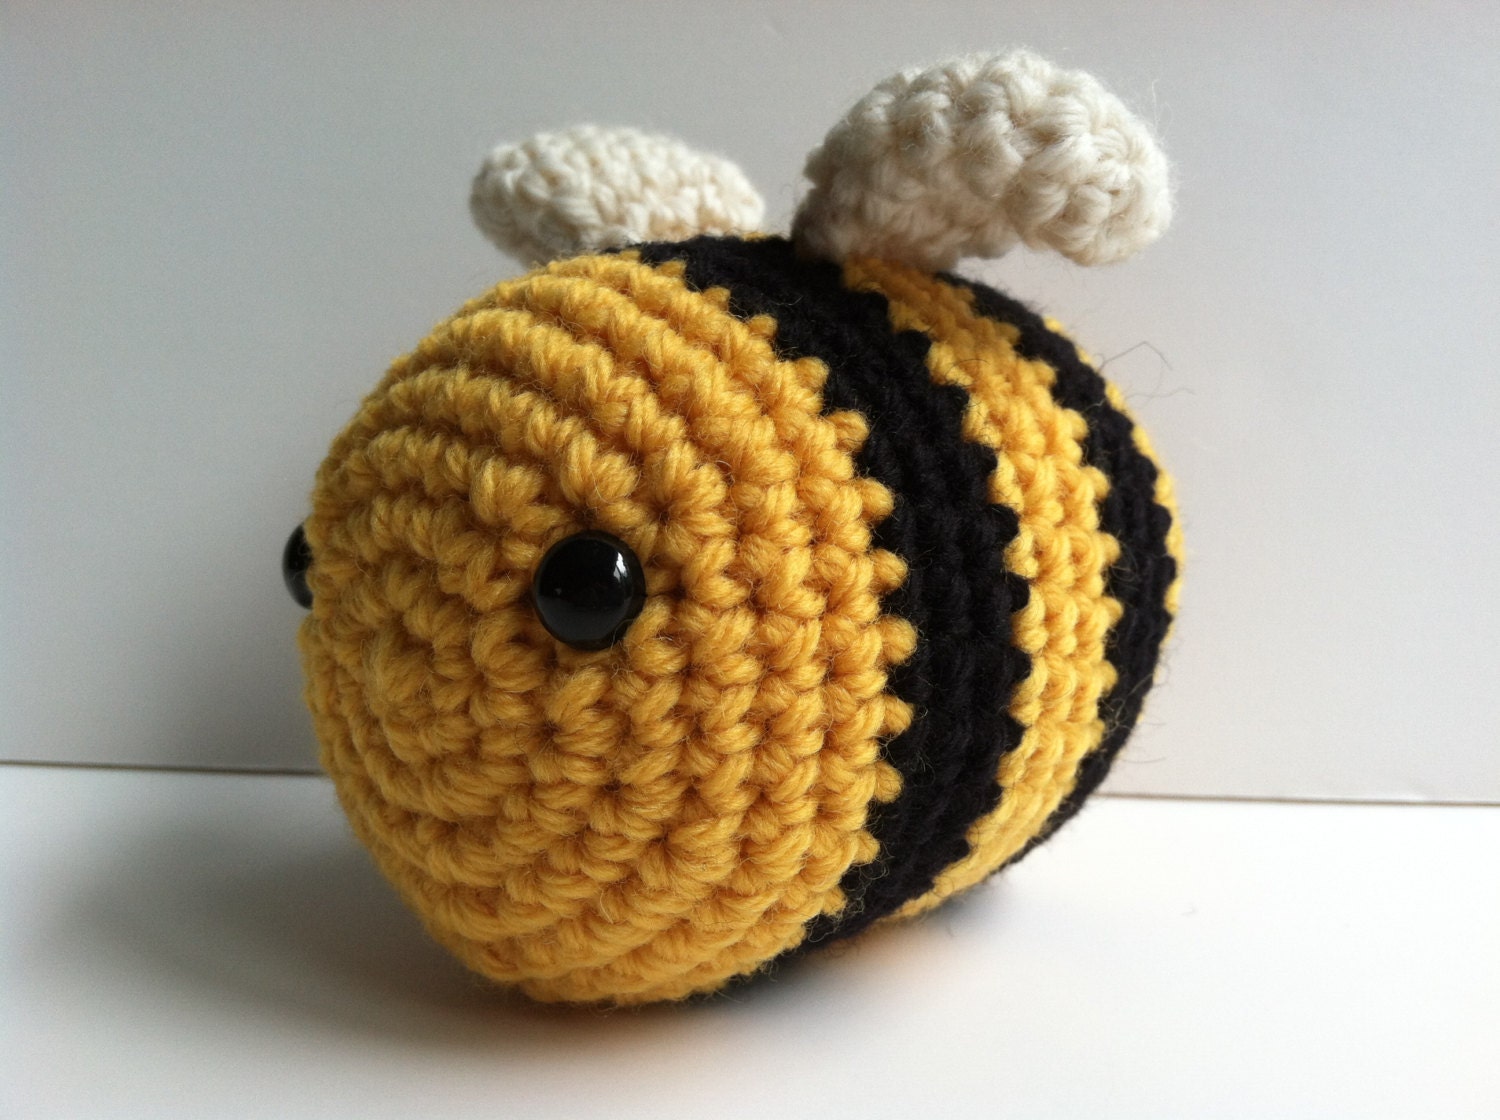 bumble bee stuffed animal